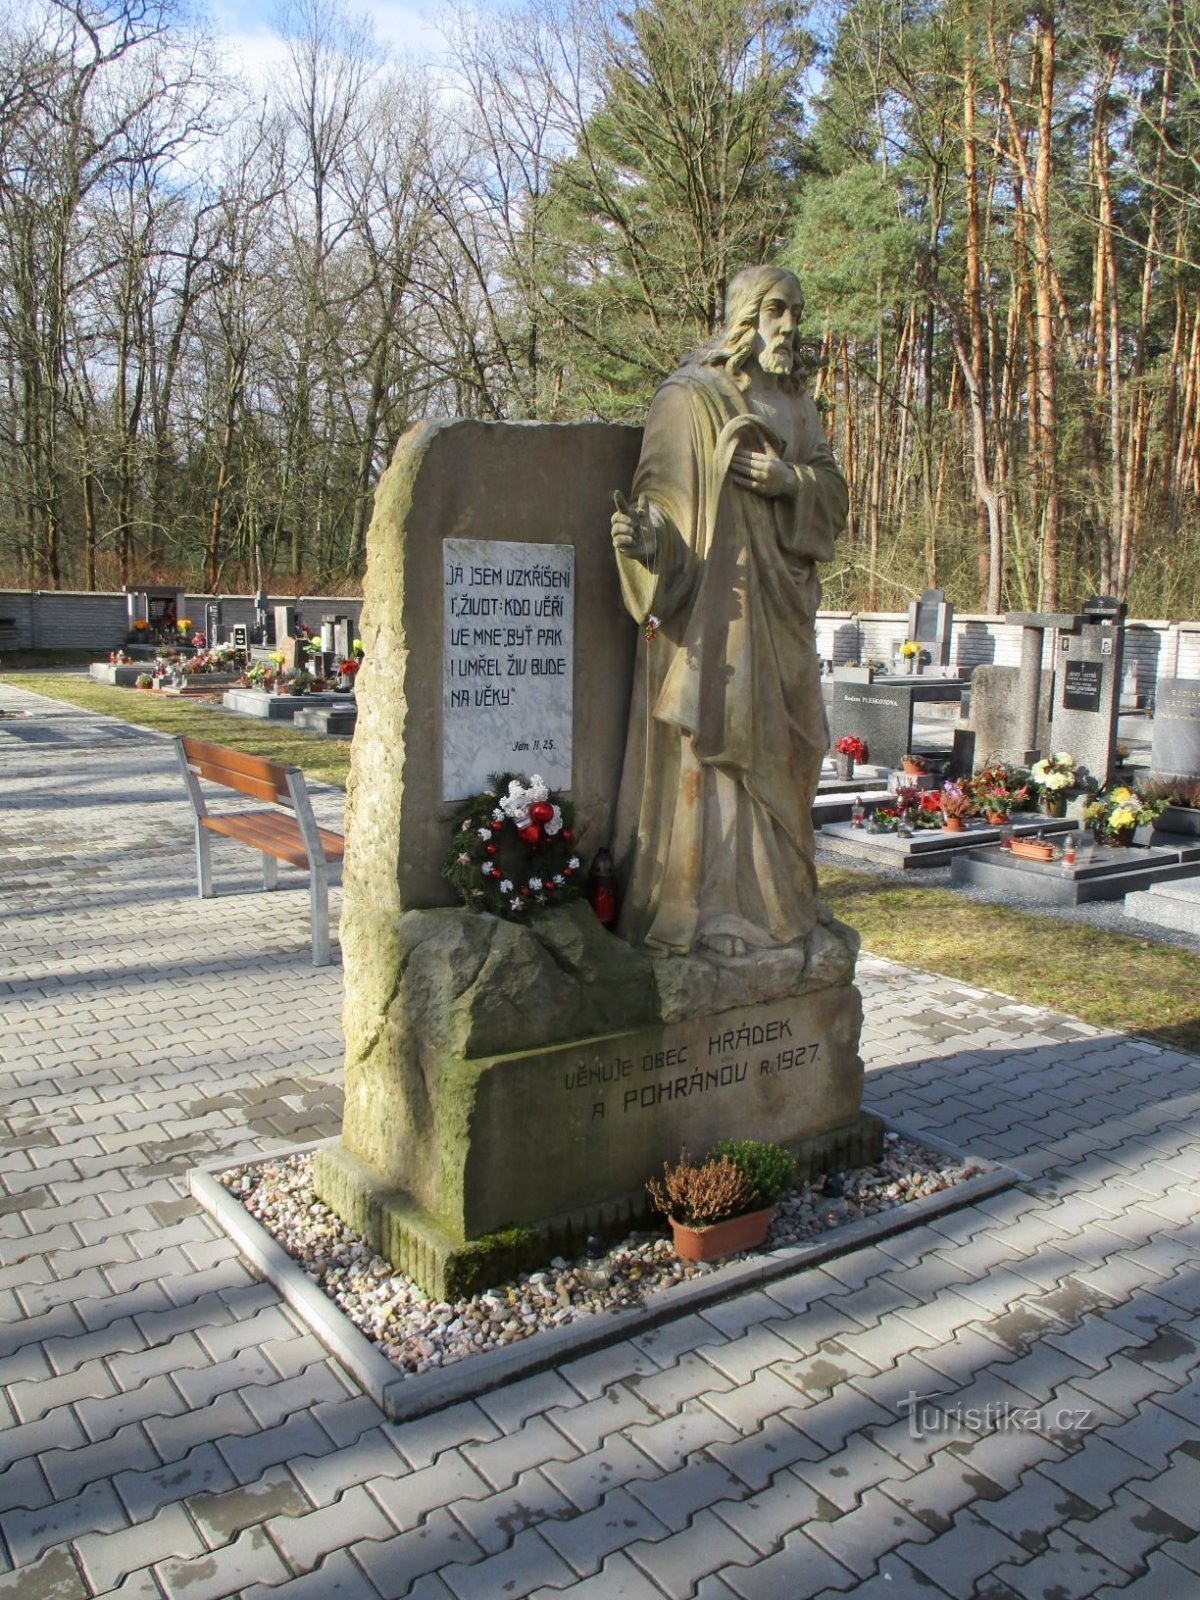 Statue von Jesus Christus auf dem Friedhof (Hrádek, 20.2.2020)